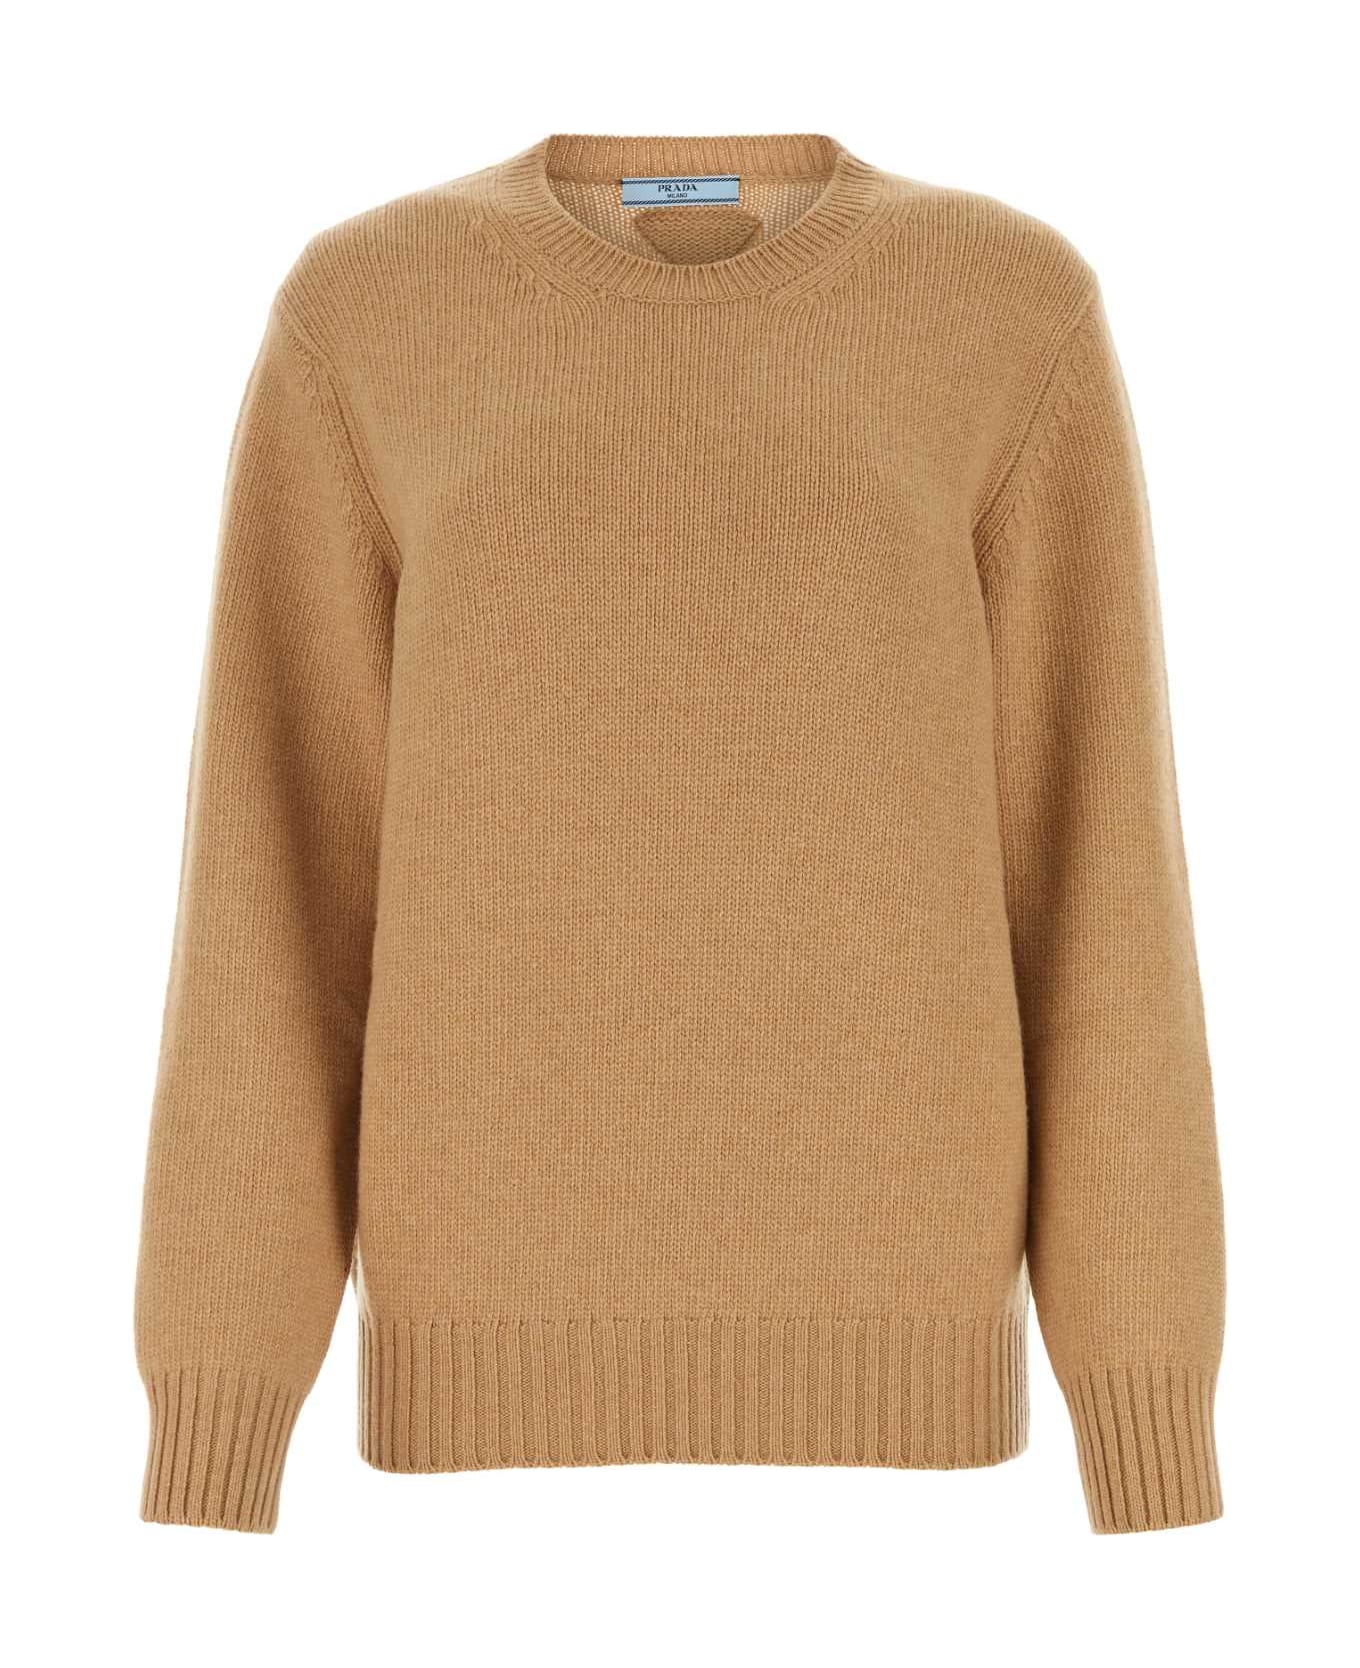 Prada Camel Wool Blend Sweater - CAMMELLO